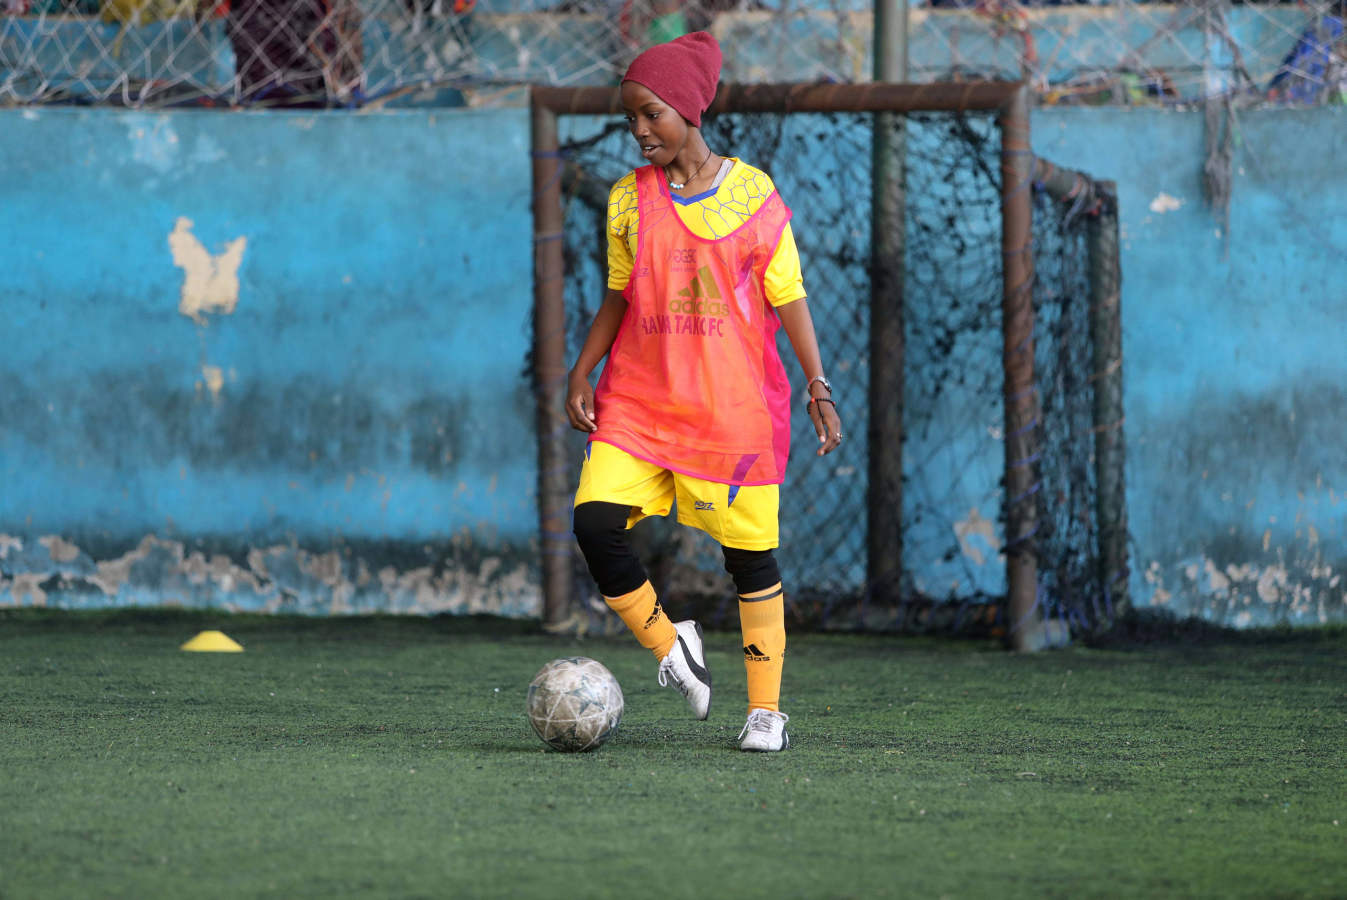 En Somalia es tabú que las mujeres aparezcan en público con pantalones cortos o camisetas porque existe la creencia de que la ropa deportiva no es adecuada para ellas. Pero las futbolistas del «Golden Girls Football Center», el primer club de fútbol femenino del país, entrenan en un gimnasio cubierto de Mogadiscio, dispuestas a acabar con miedos y desafiar prejuicios y discriminaciones, con la esperanza de representar a su país en algún campeonato internacional.